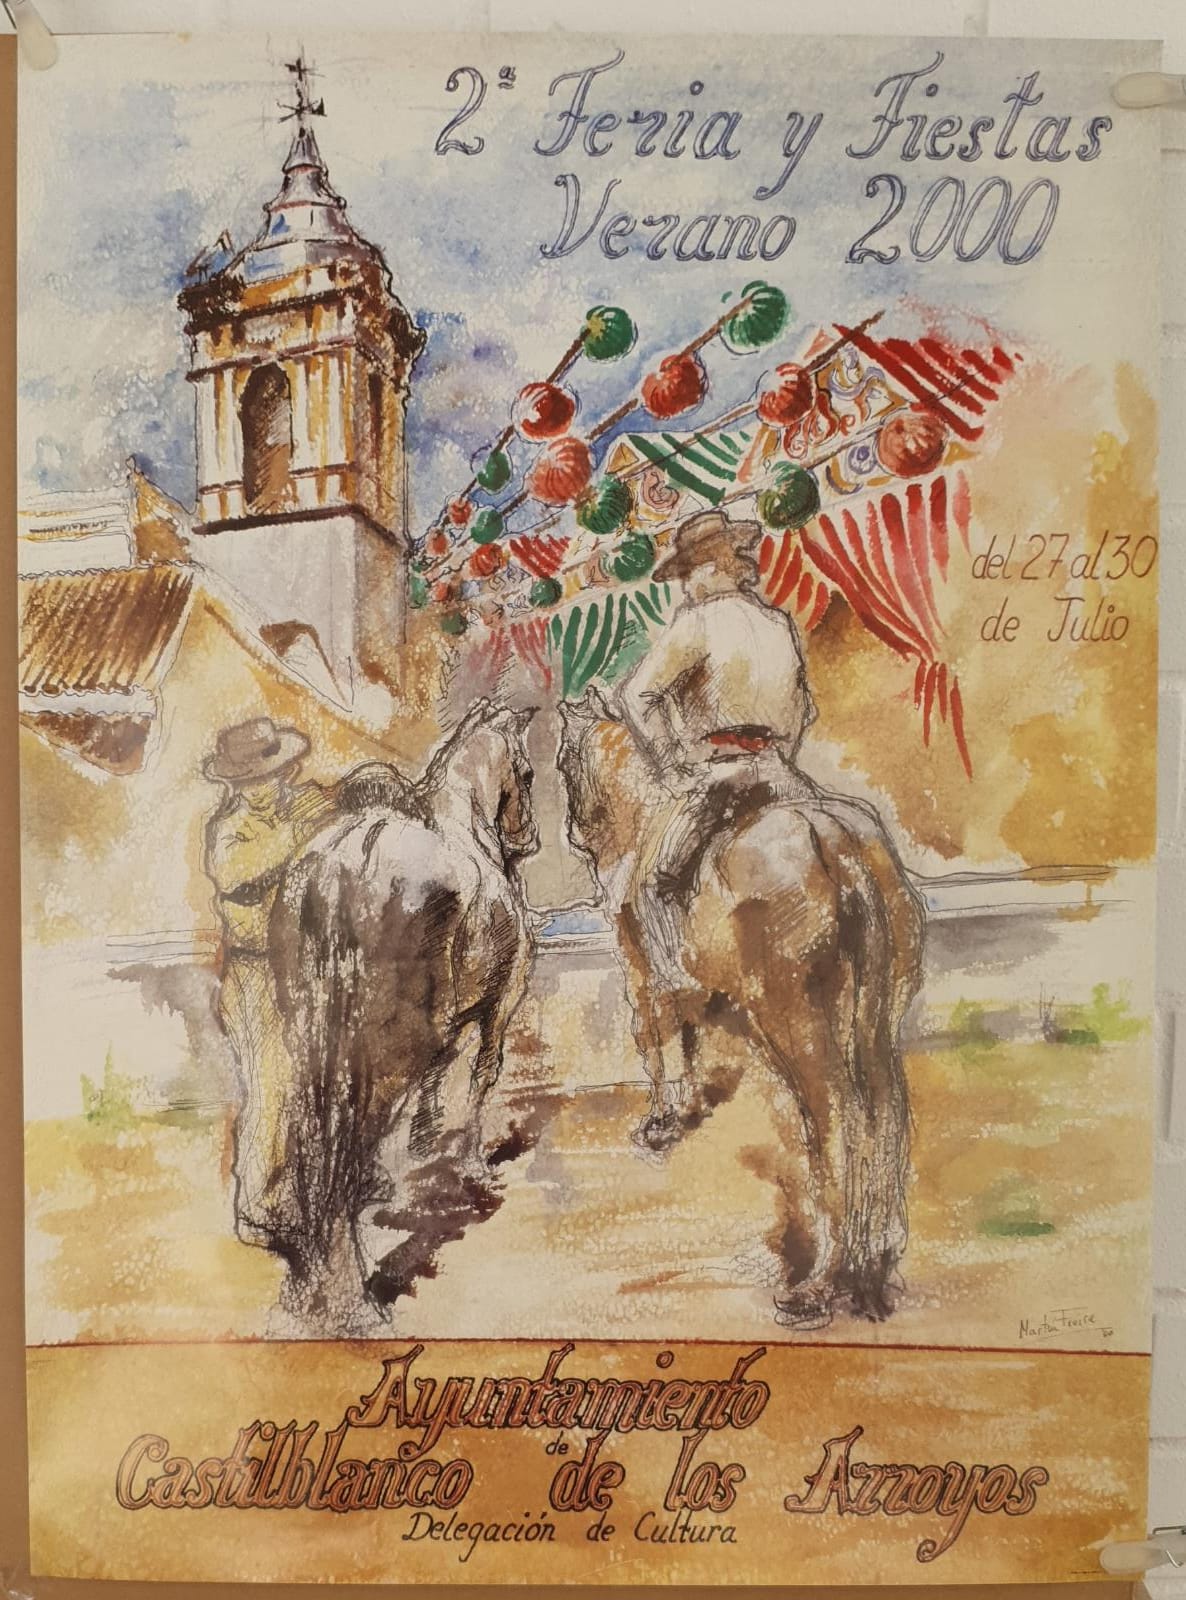 Cartel (68x50) Castilblanco de los Arroyos. 2ª Feria y Fiestas, Verano, 2000